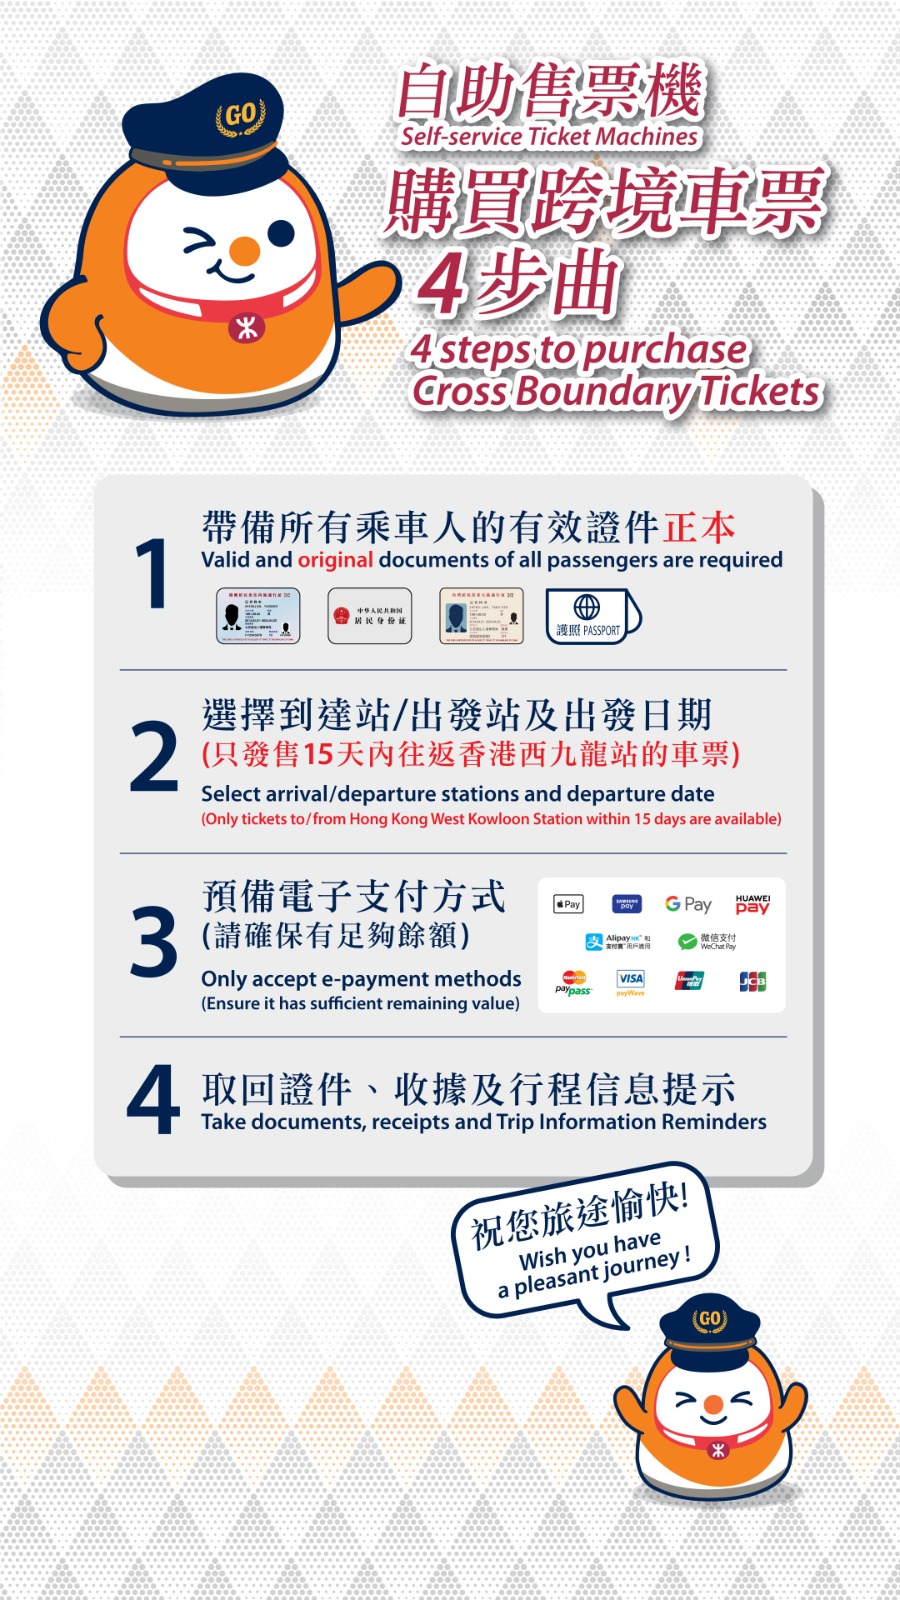 港鐵將包括加派人手及開放所有香港票務櫃位協助乘客購票。